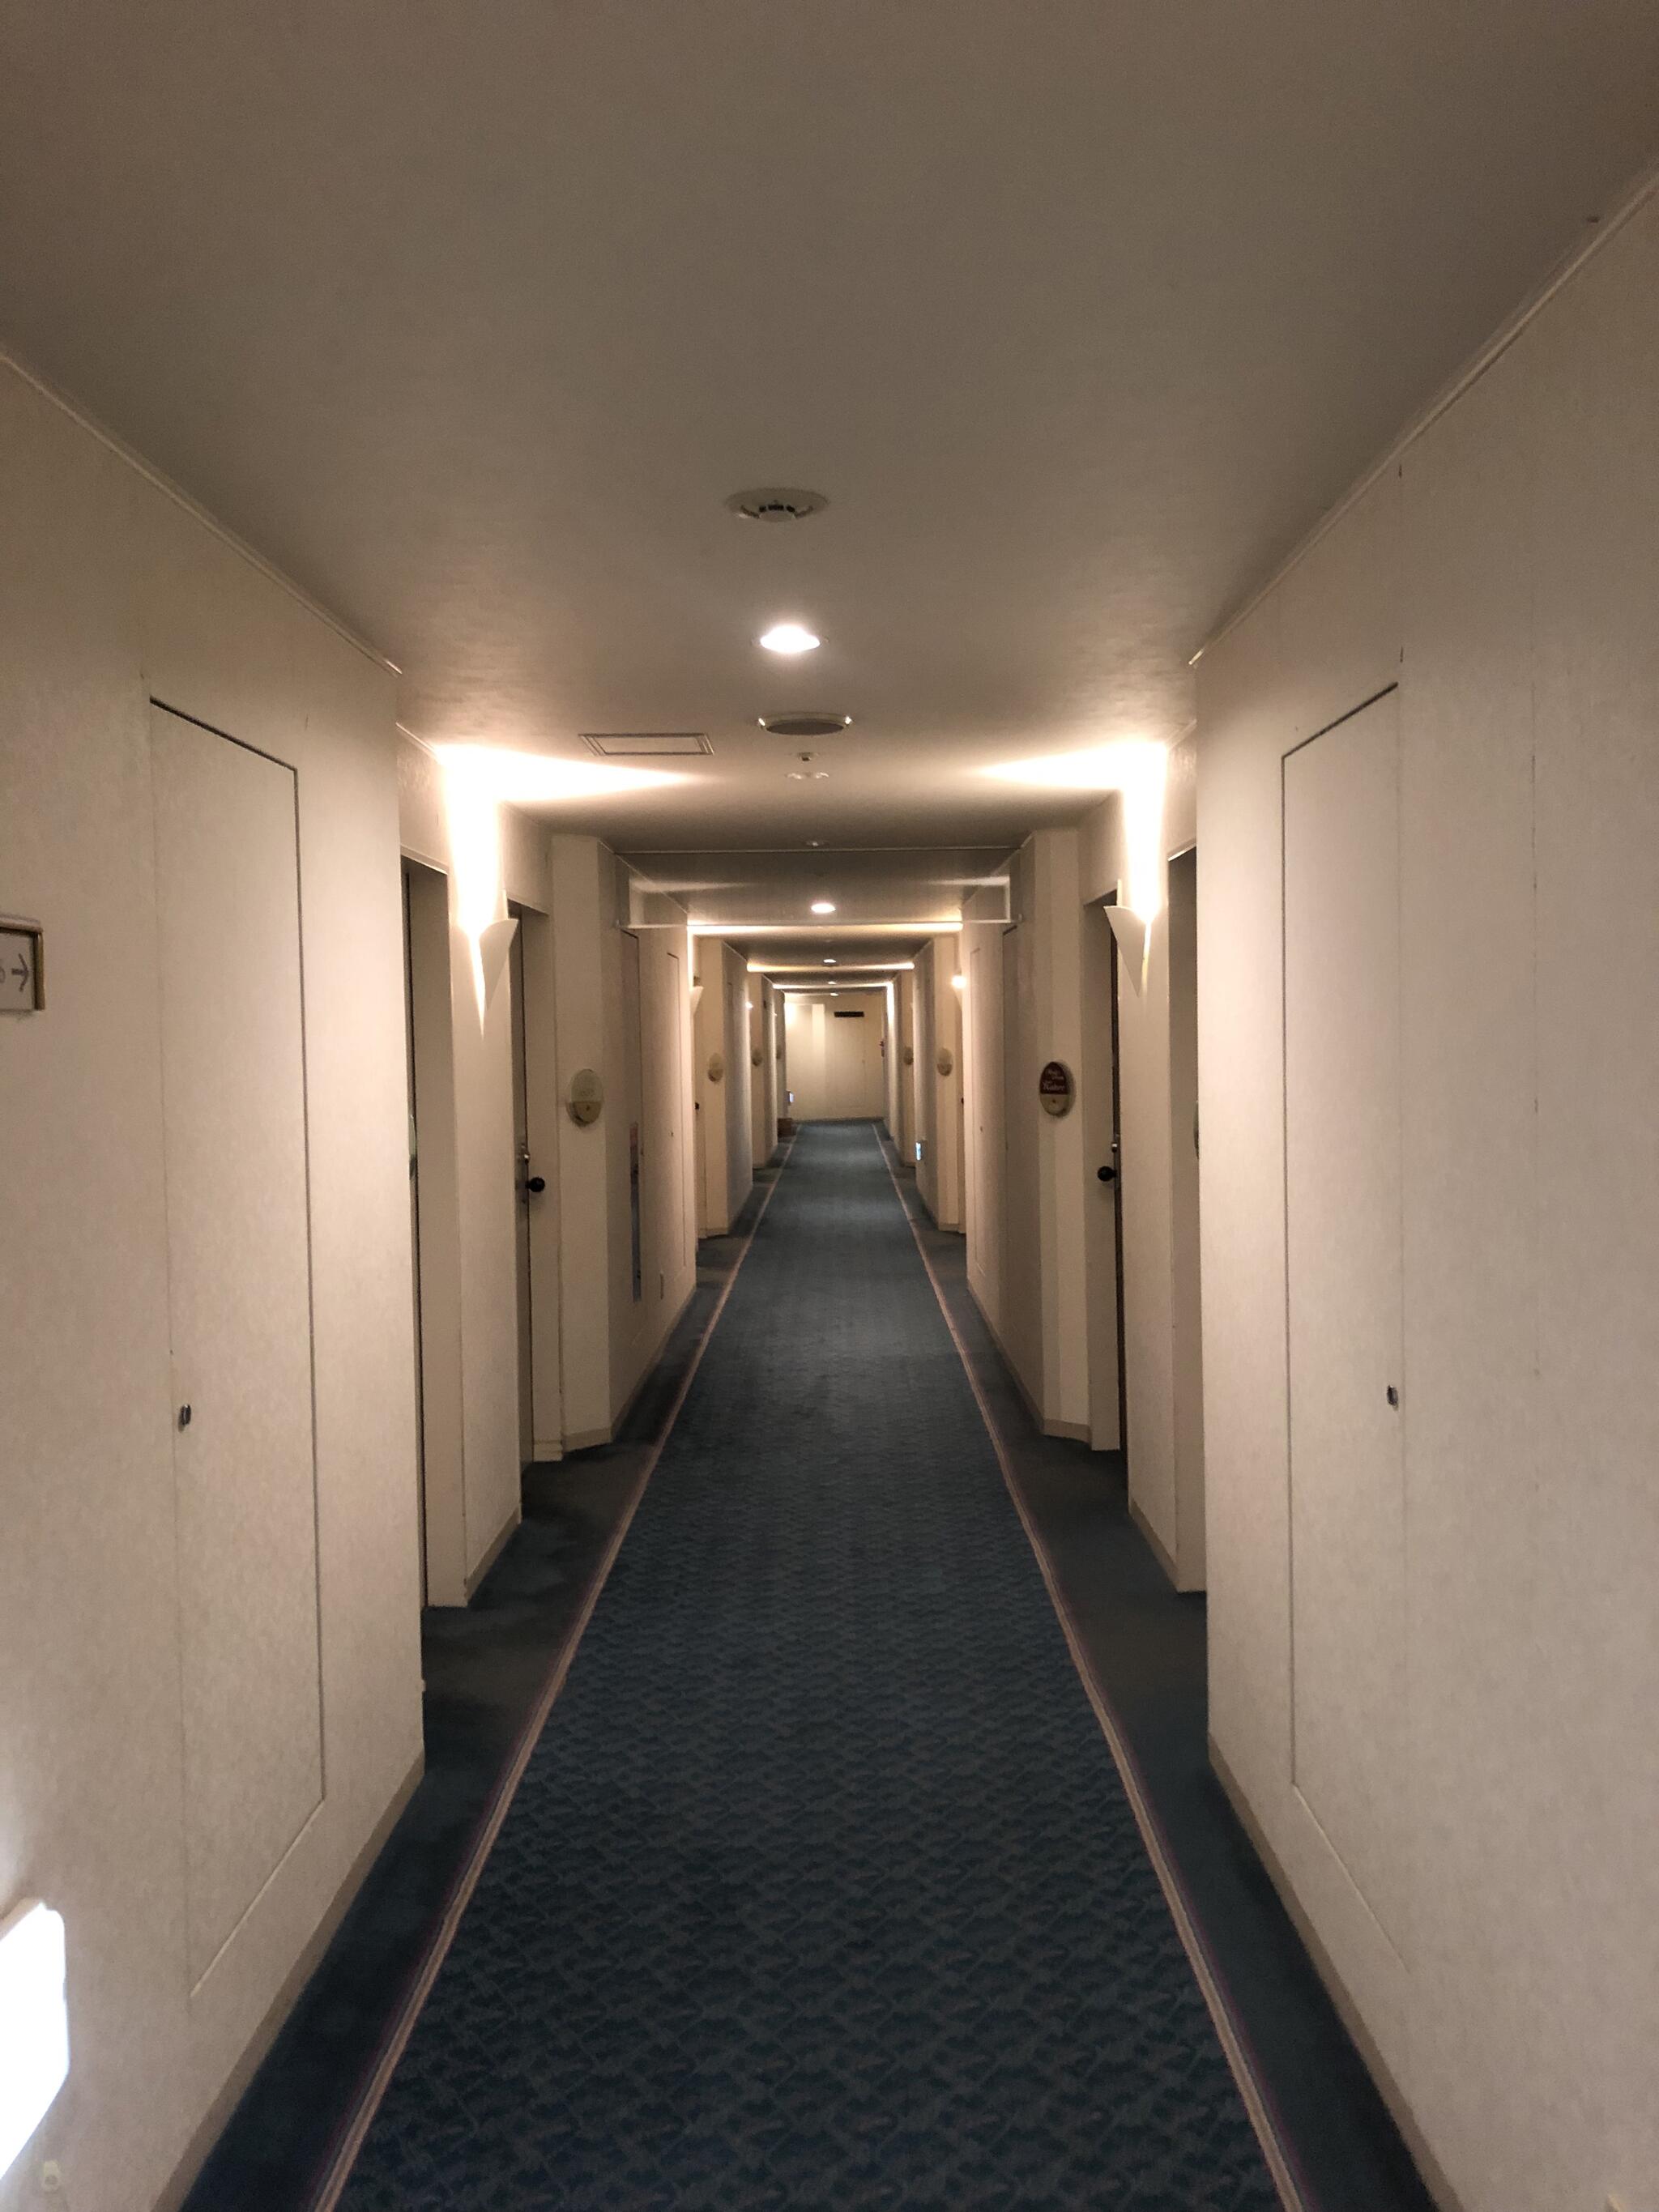 ザ・ニューホテル 熊本~DLIGHT LIFE & HOTELS~の代表写真6